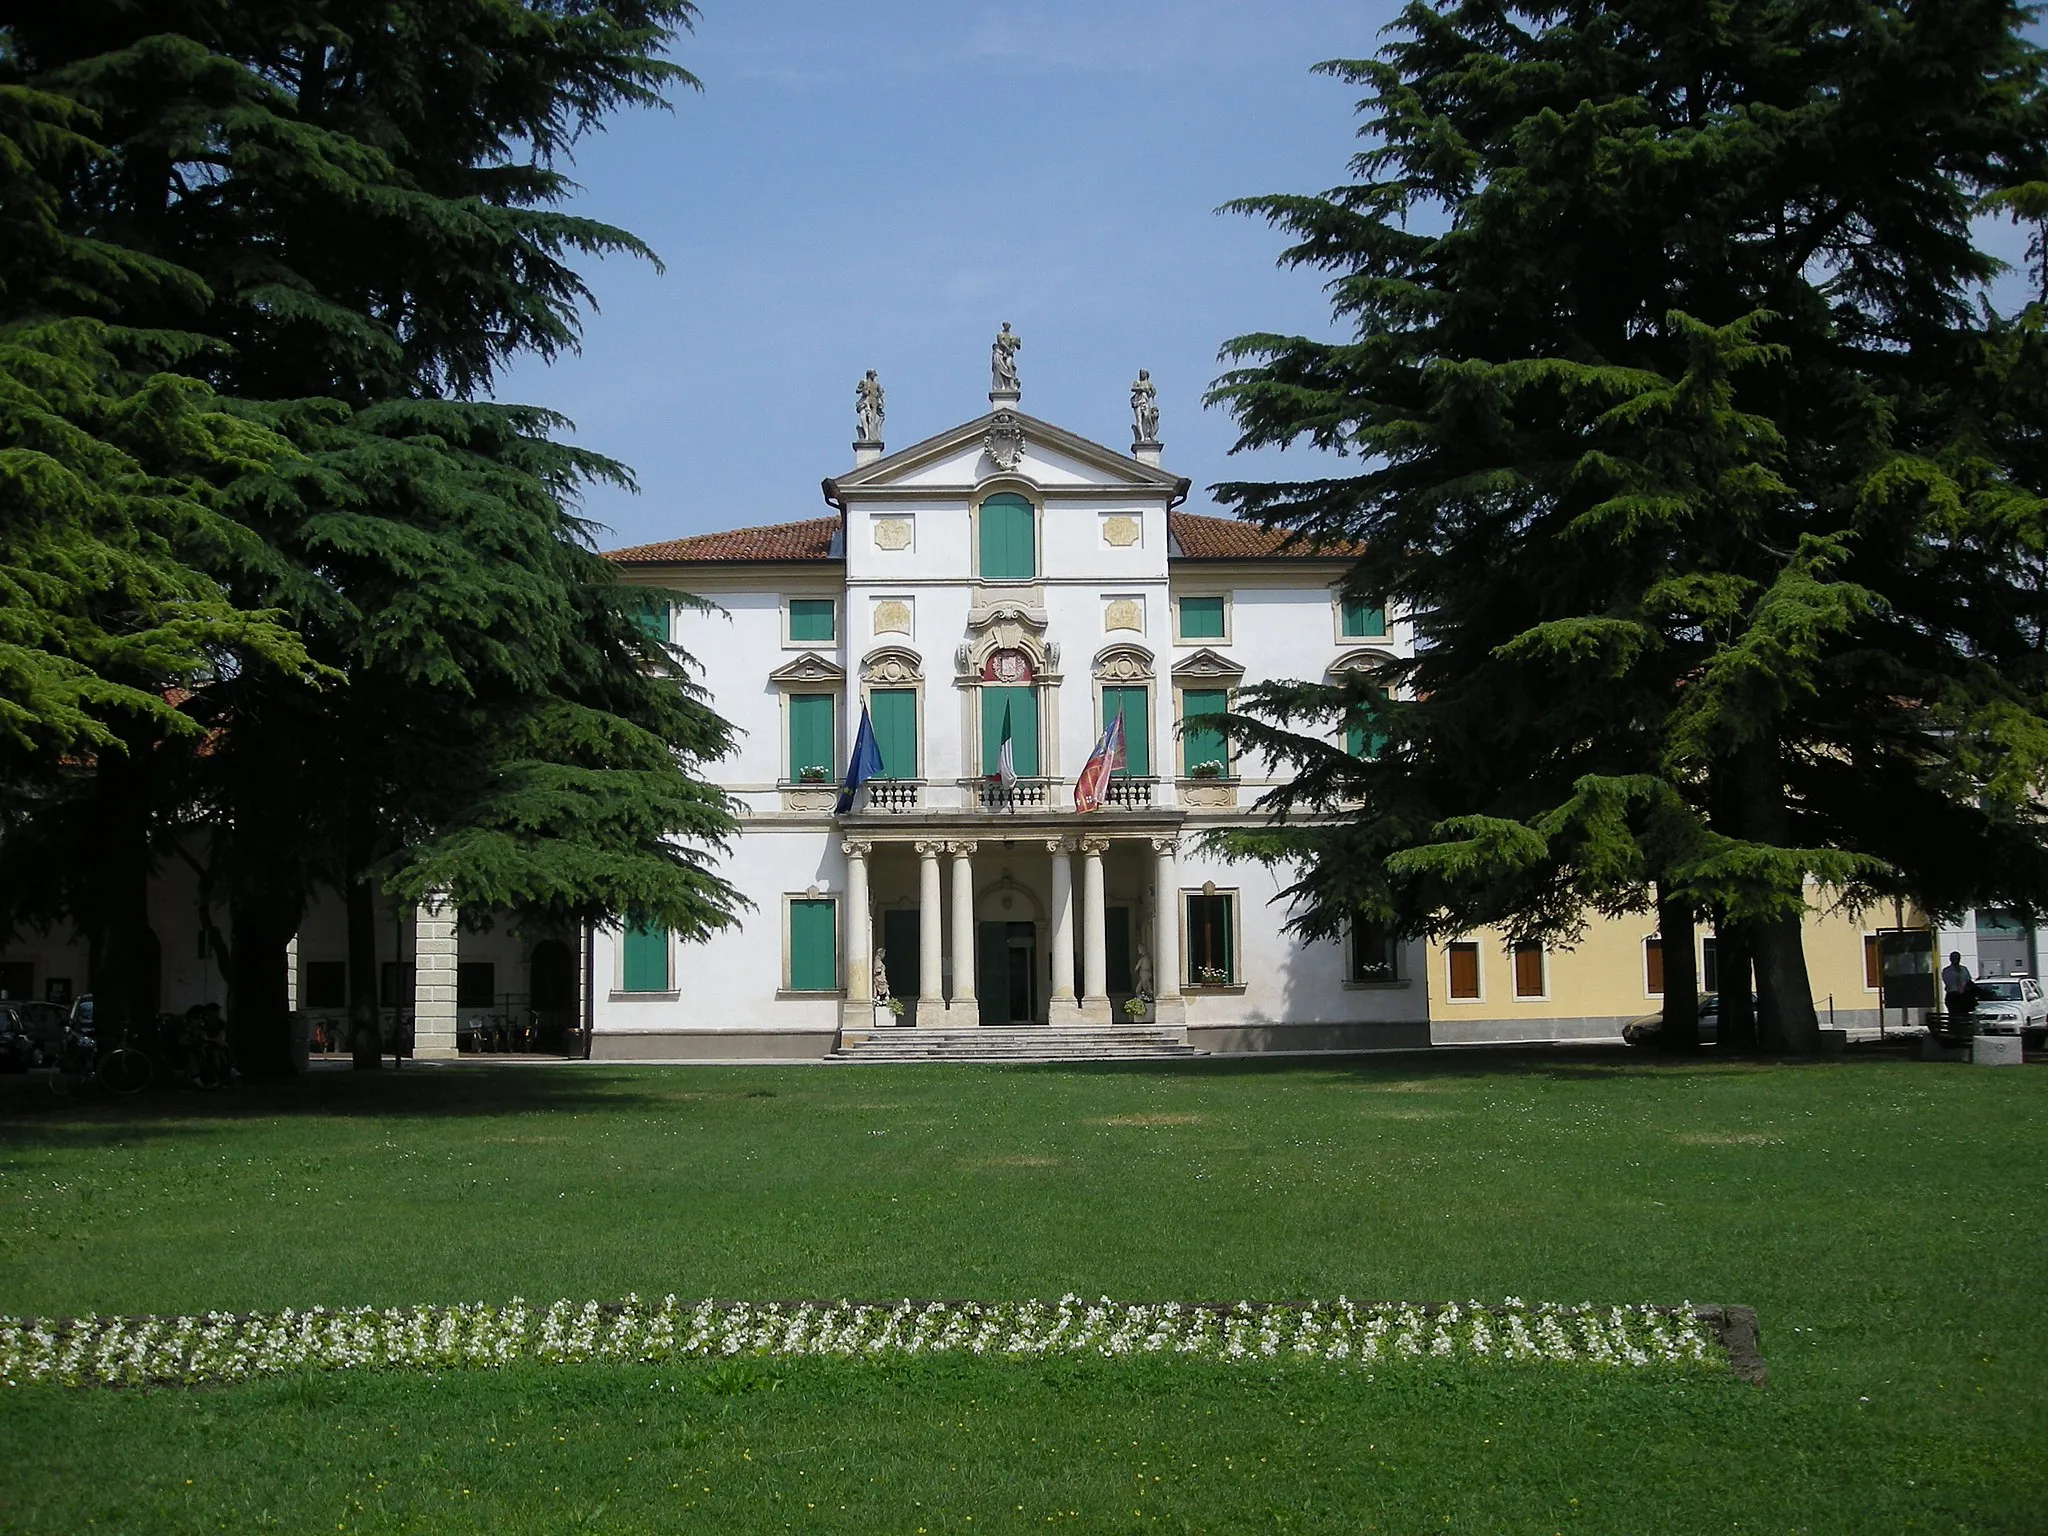 Photo showing: Dueville, Vicenza, Italy, Villa Monza - Municipio. Attributed to Francesco Muttoni, 1715